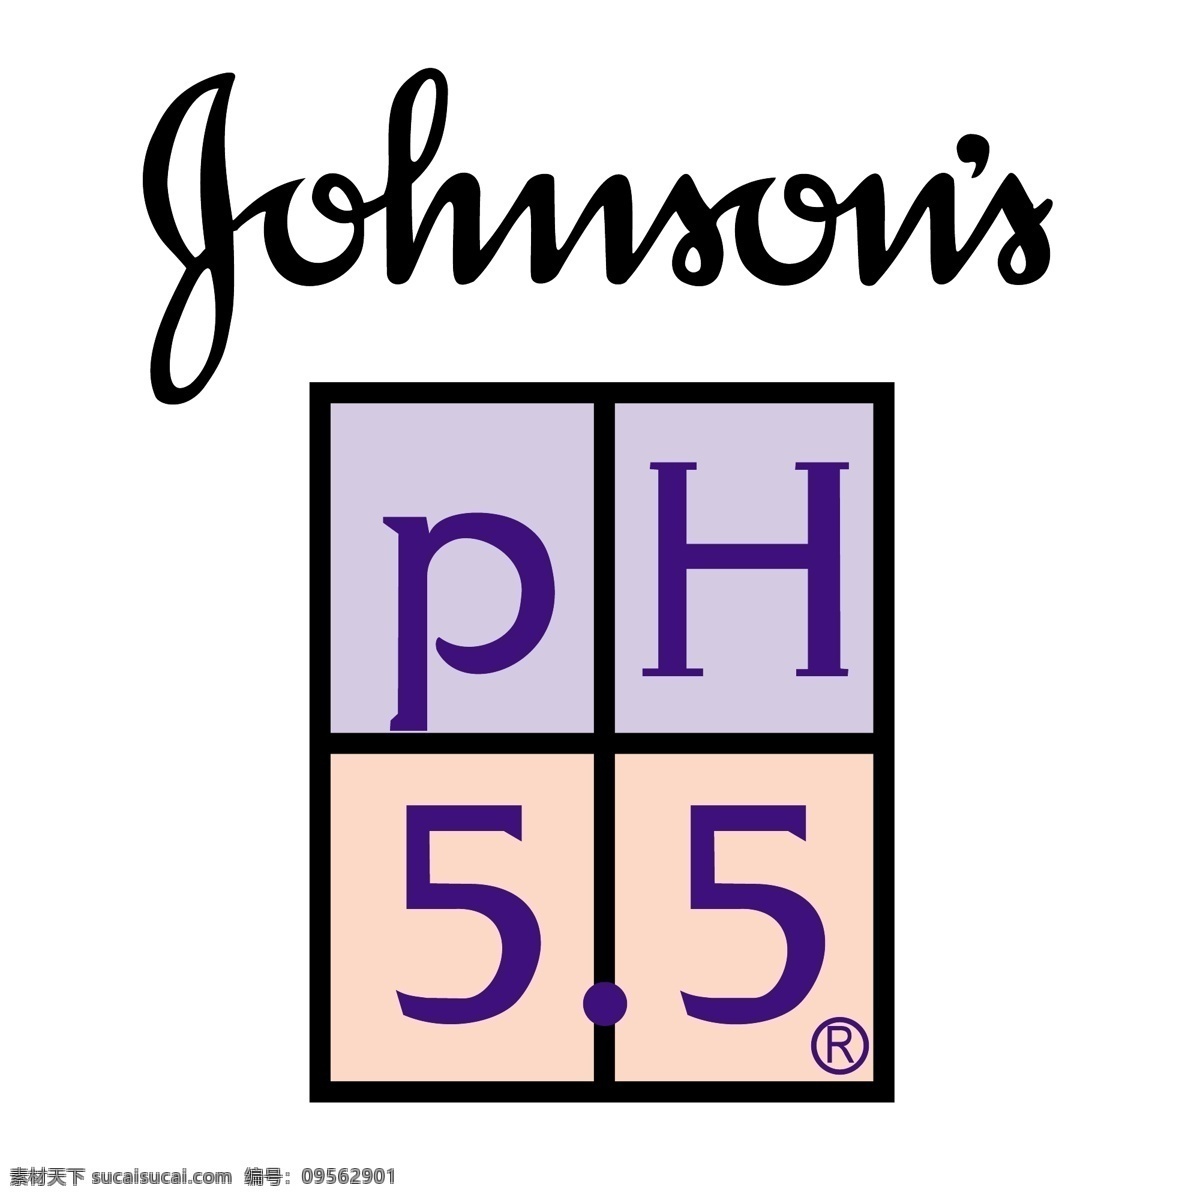 约翰逊ph5 自由 约翰逊 ph5 标识 白色